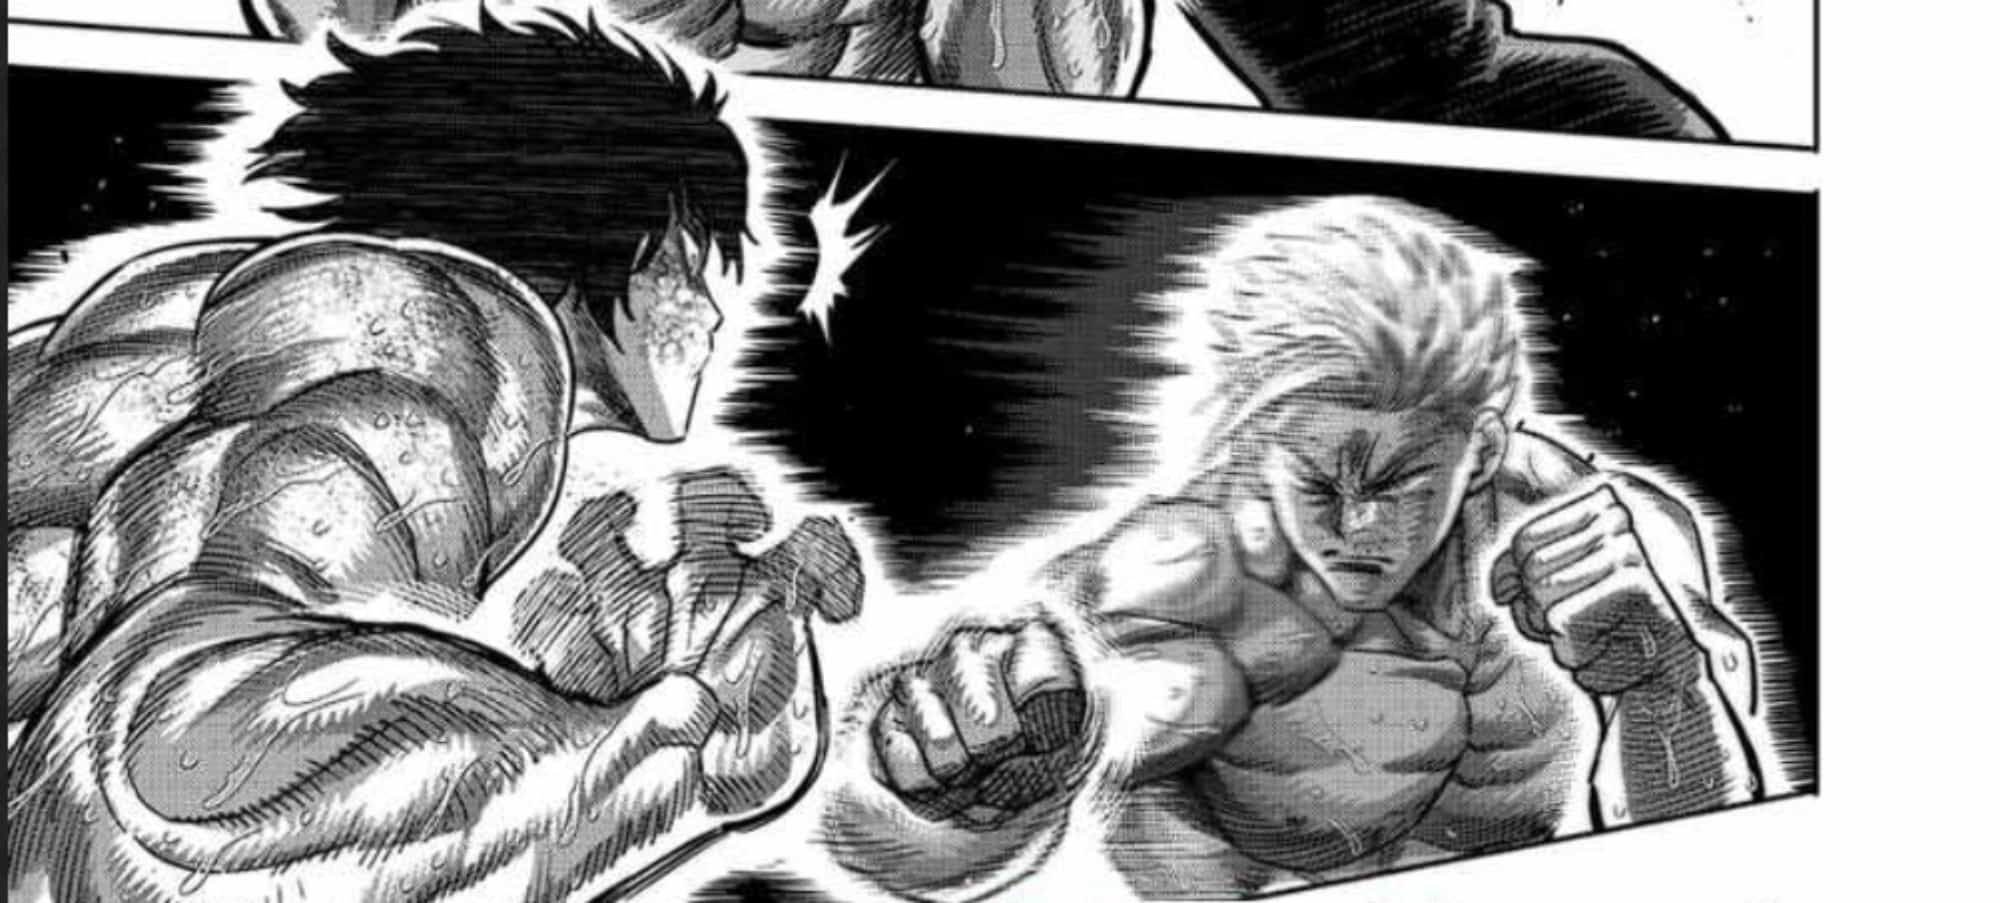 Gaoh Ryuki fighting Narushima Koga from Kengan Omega